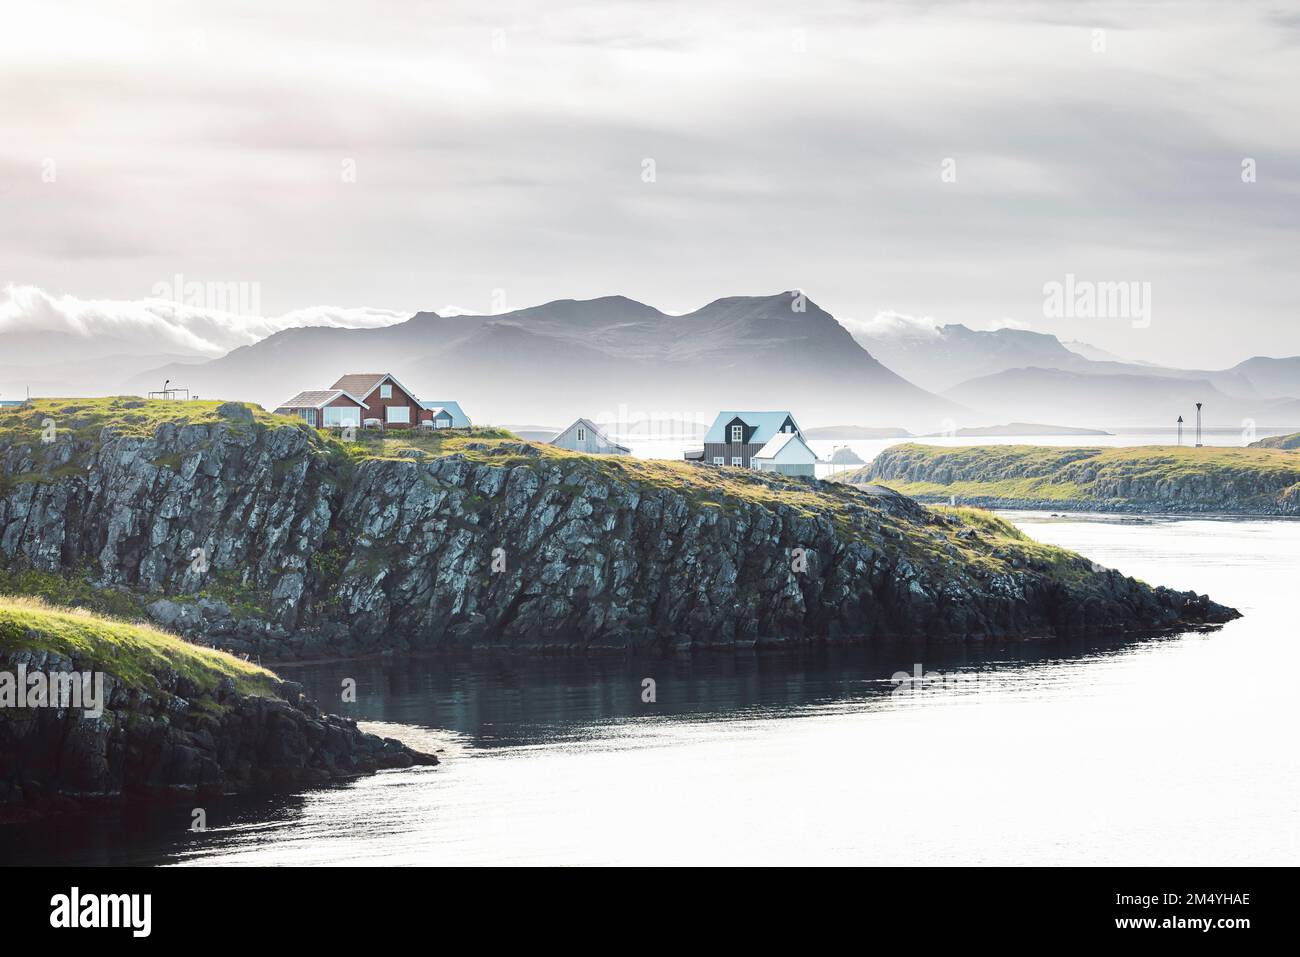 Brouillard sur la mer dans la ville de Stykkisholmskirkja en Islande, maisons colorées au bord de la falaise Banque D'Images